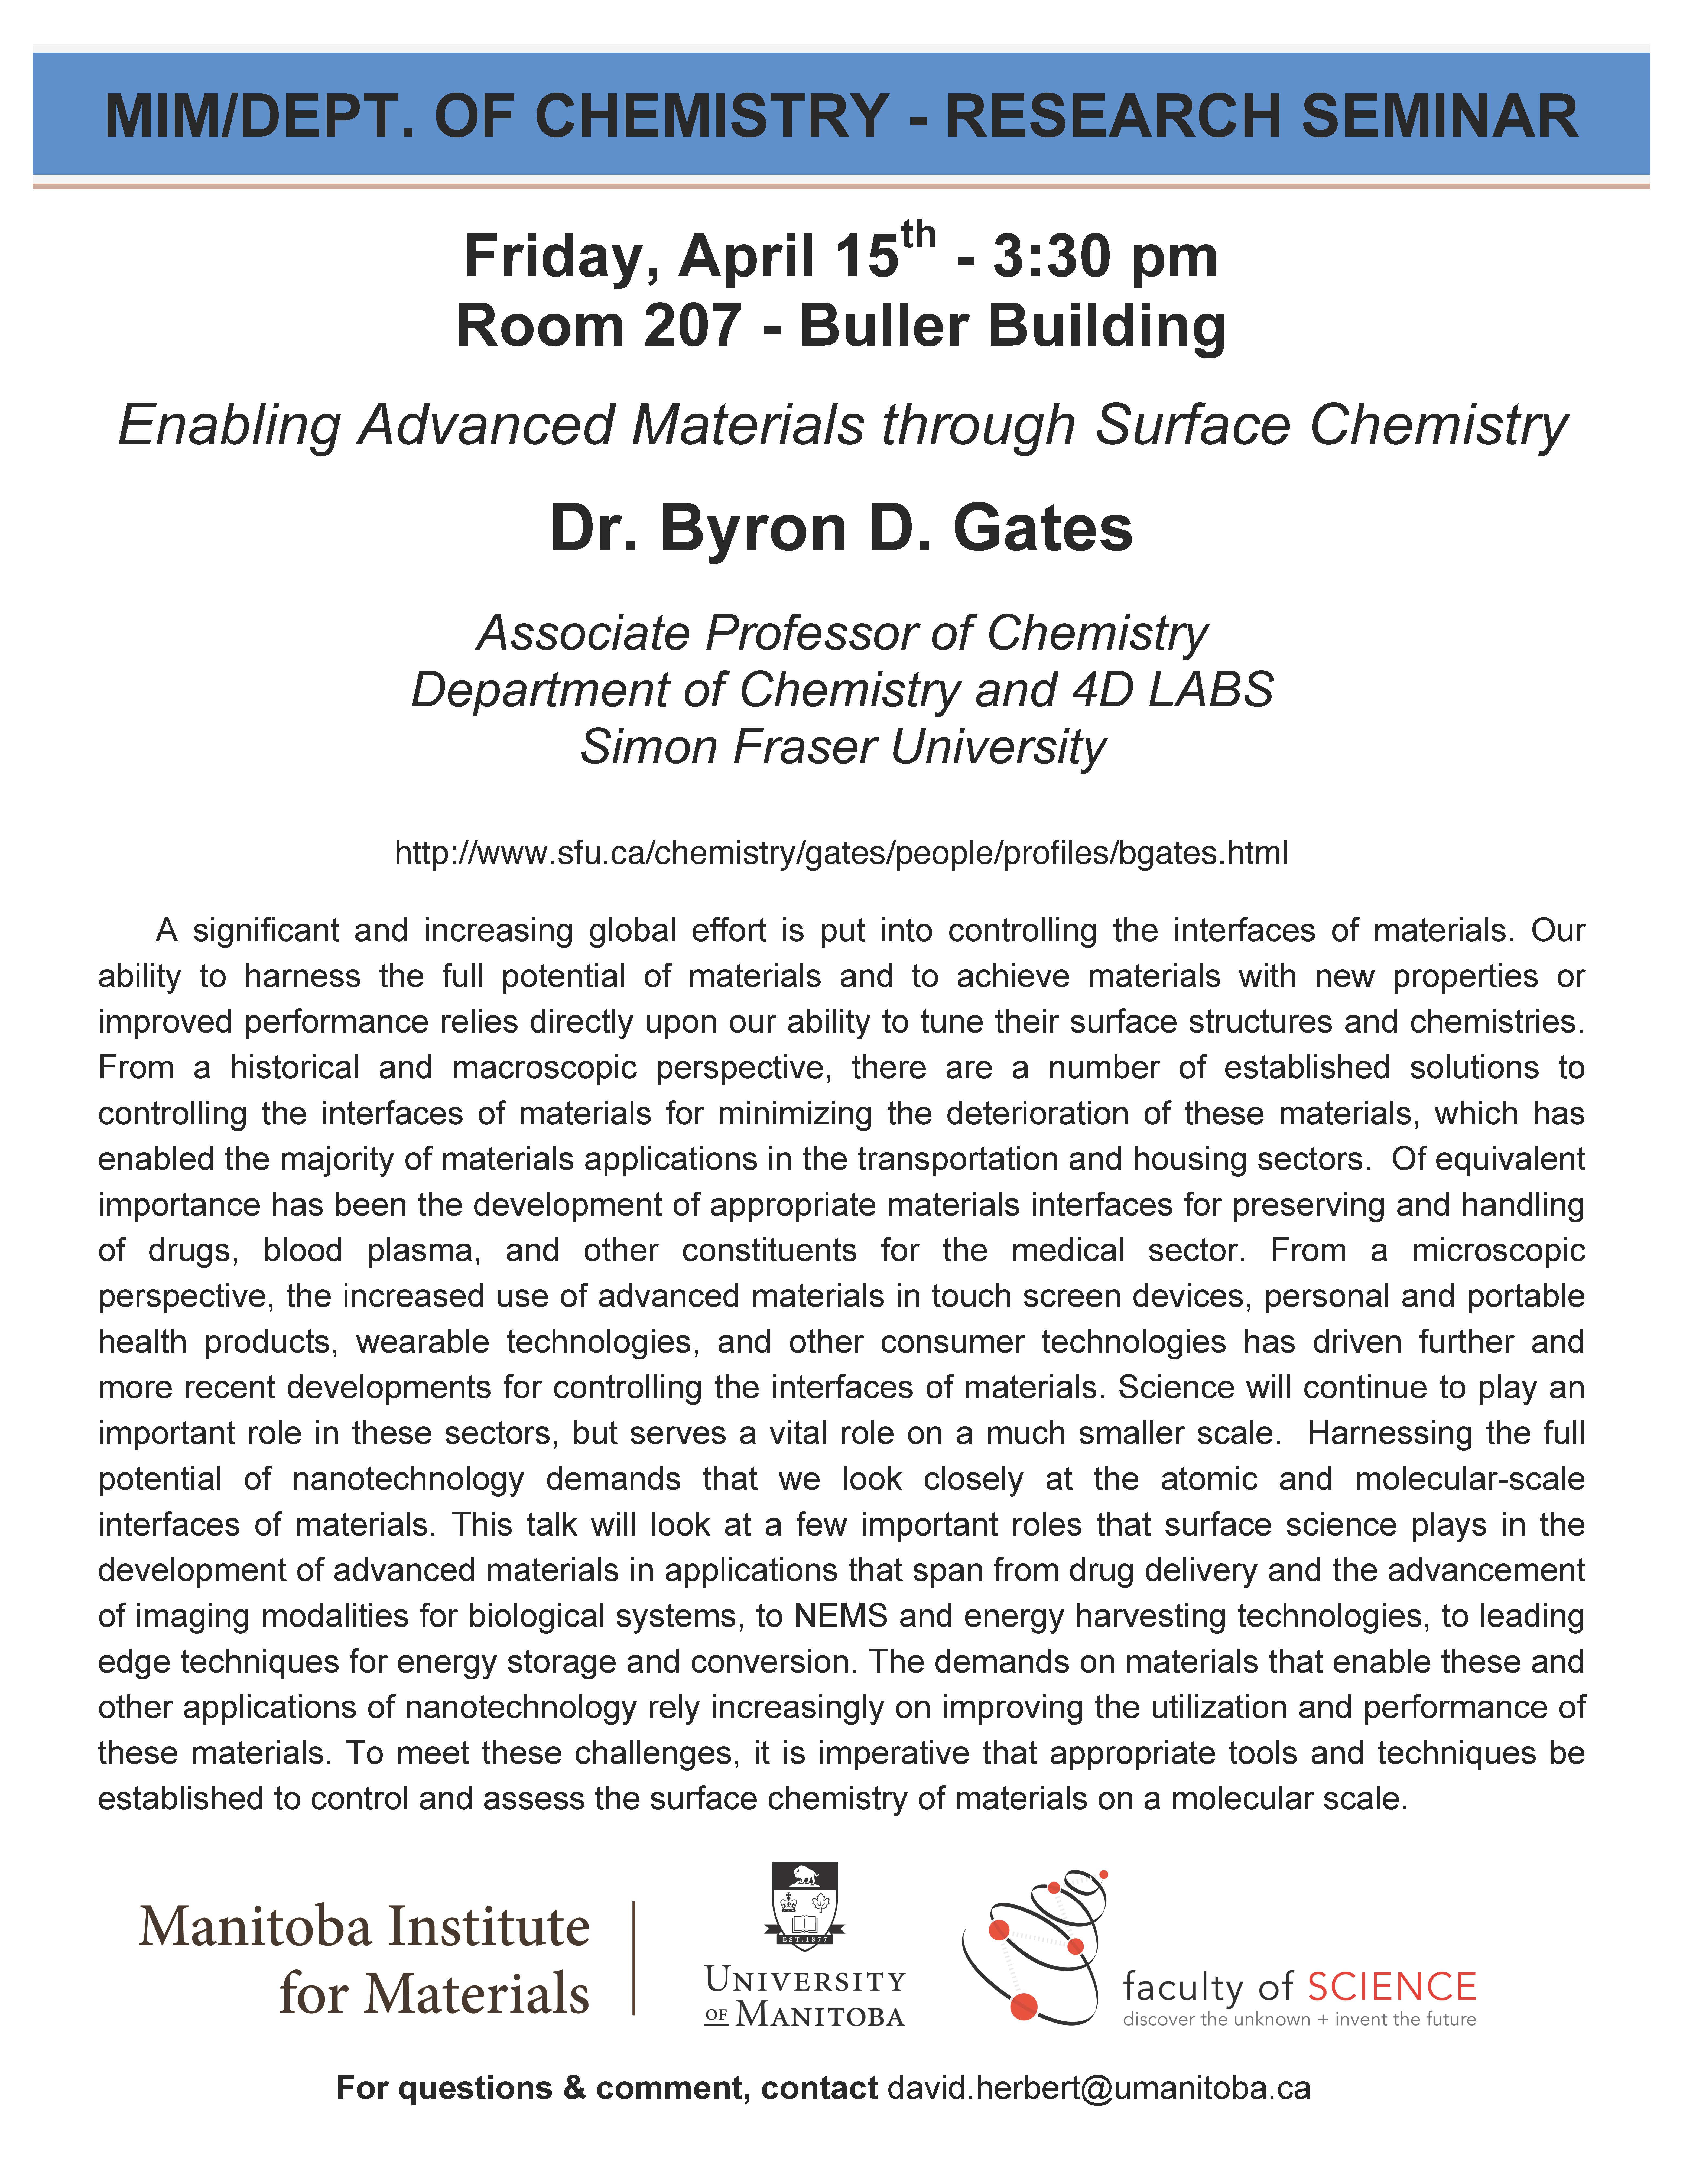 Byron Gates Research Seminar